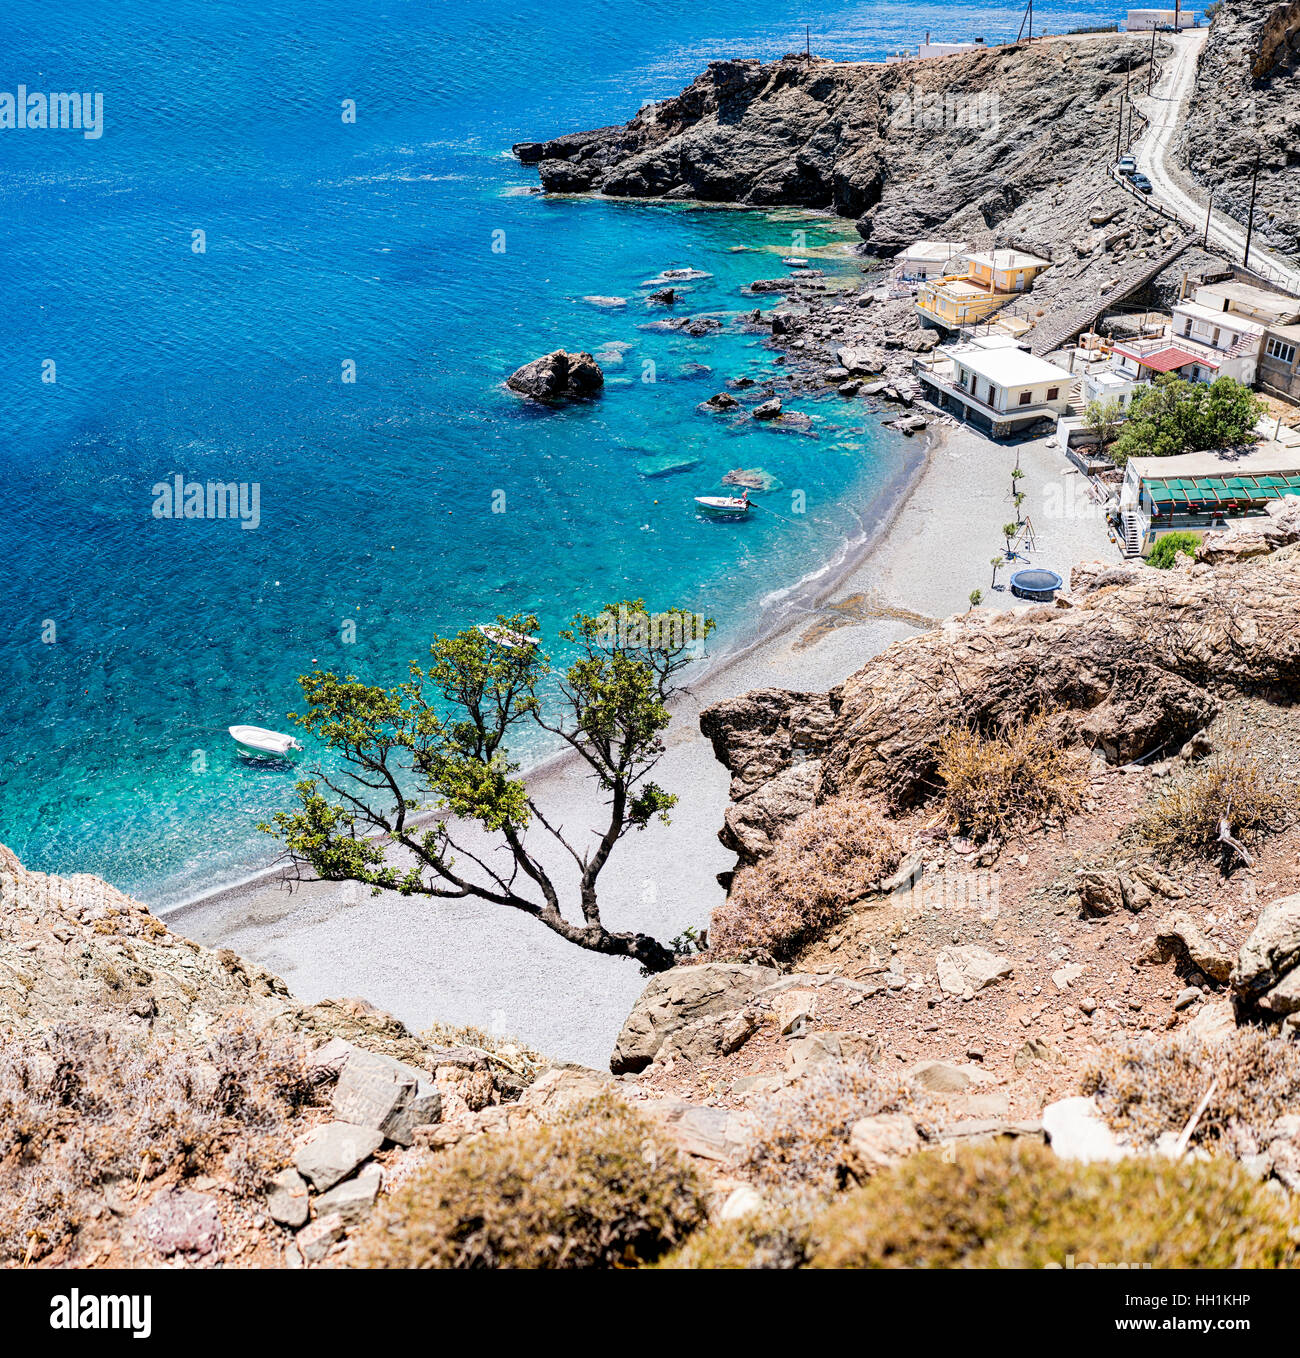 Maridaki beach. Una bellissima spiaggia remota nel sud di Creta, Grecia. Foto Stock